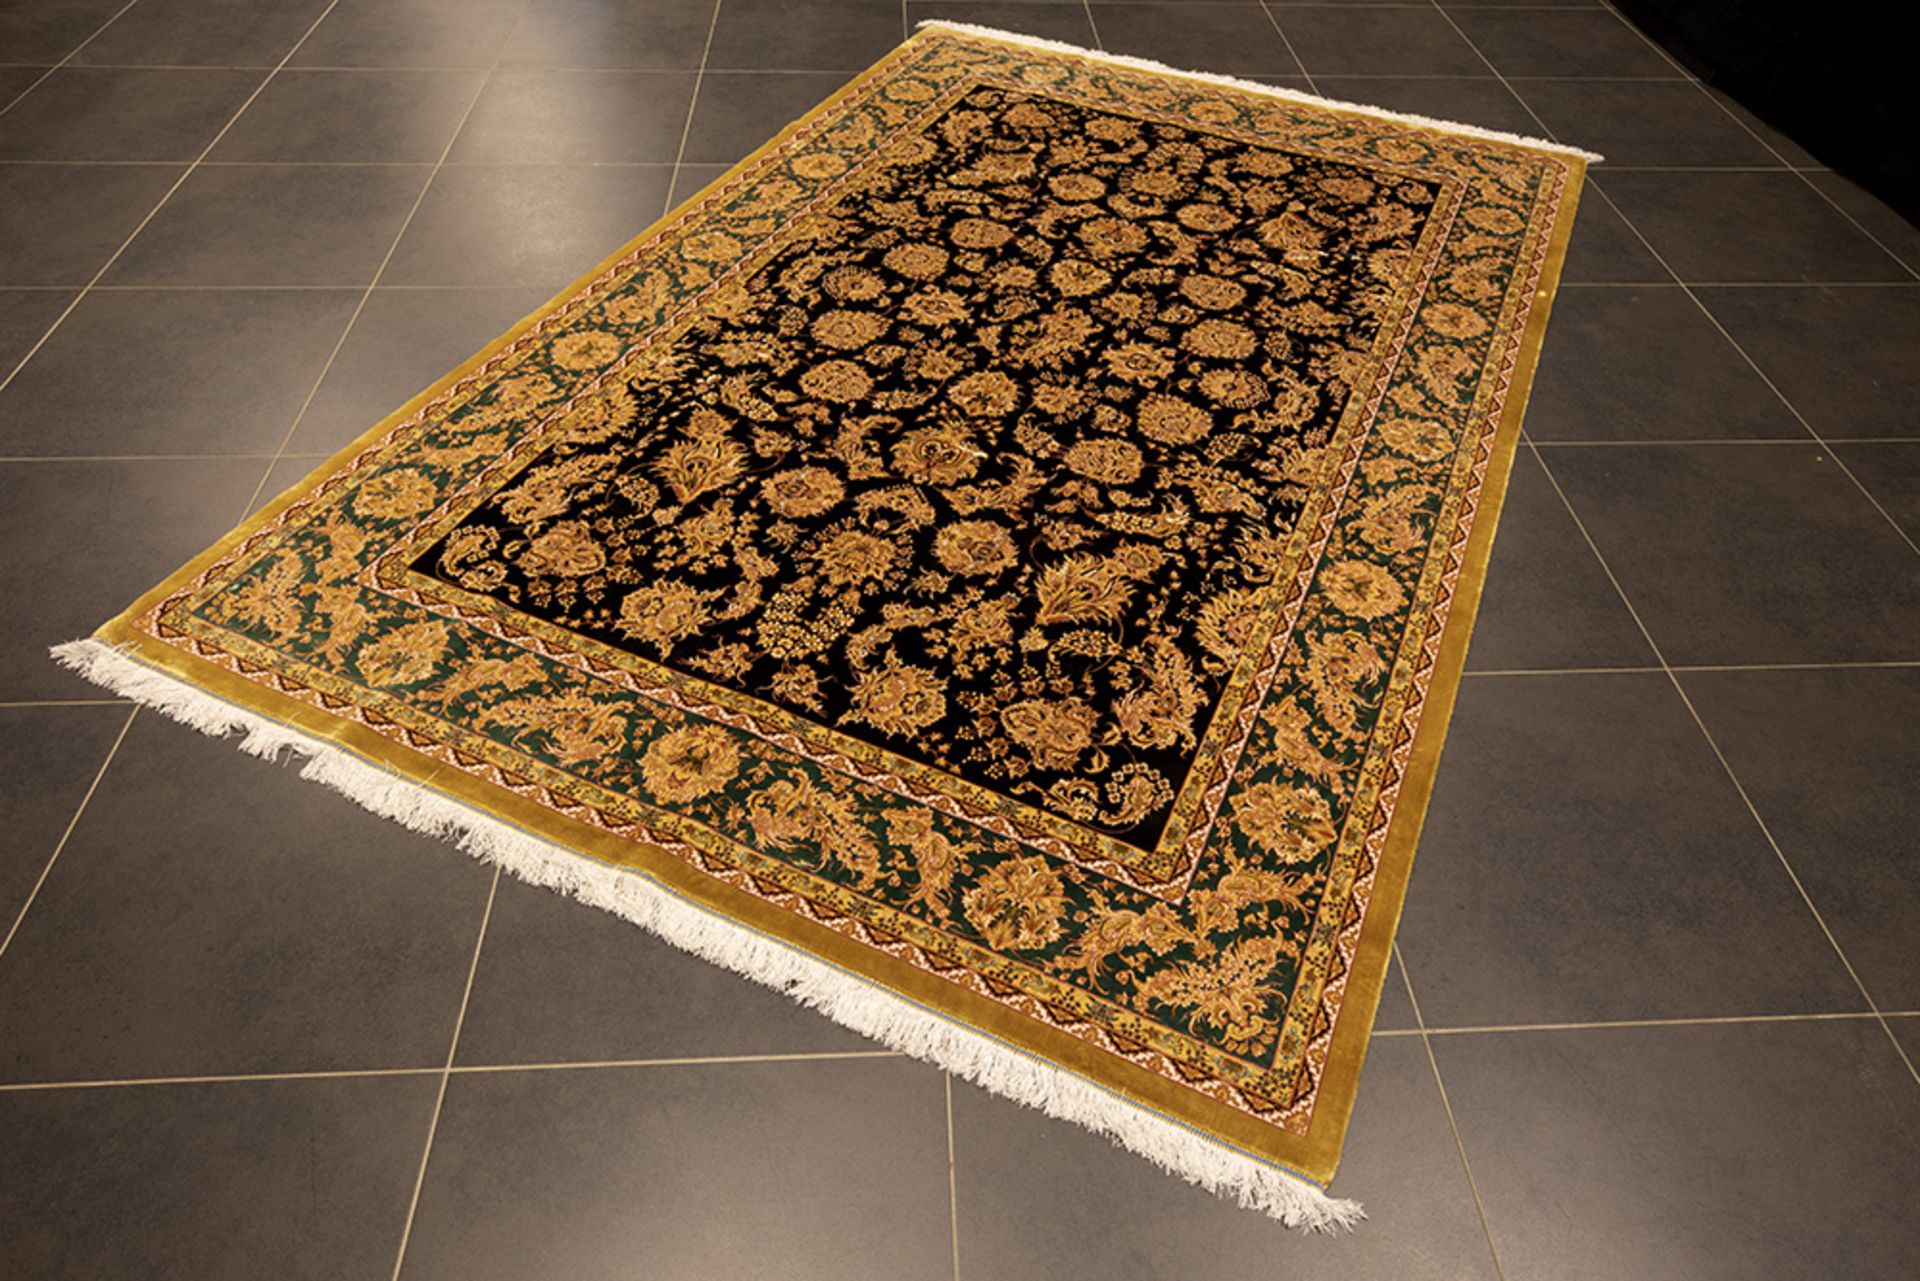 Persian carpet in 100% silk with a "Shah Abbas" decor || Zeer fijn Perzisch tapijt in zijde op zijde